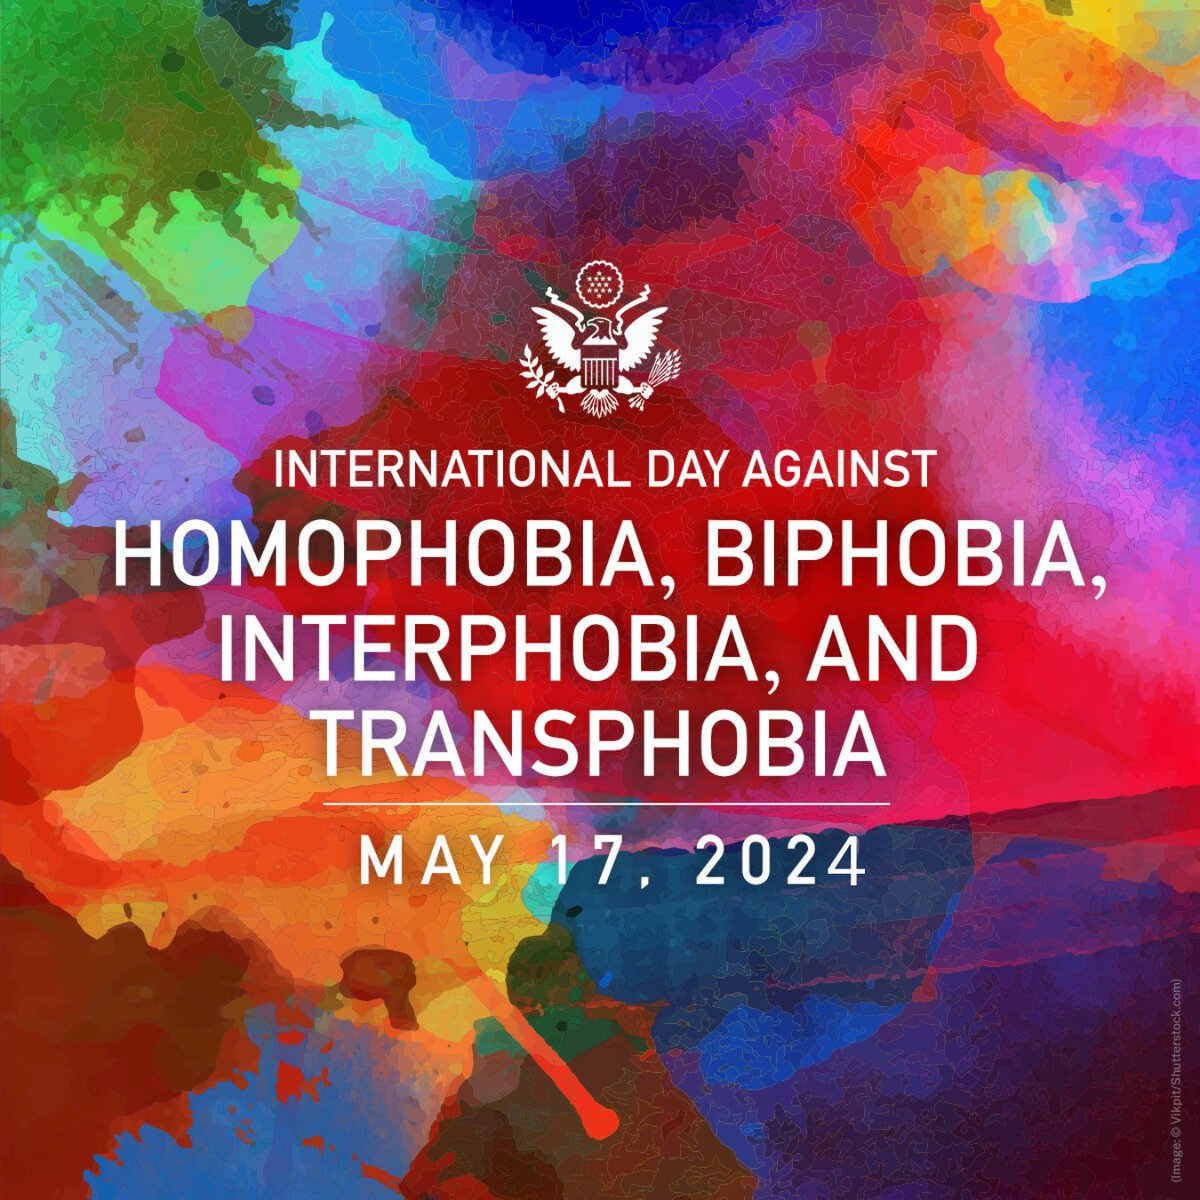 I dag er det International Dag mod homo-, bi-, inter- og transfobi (IDAHOBIT). Det er en vigtig påmindelse om, at alle mennesker, uanset deres seksuelle præferencer og identitet, har de samme rettigheder. Alt for mange steder i verden bliver seksuelle minoriteter stadig